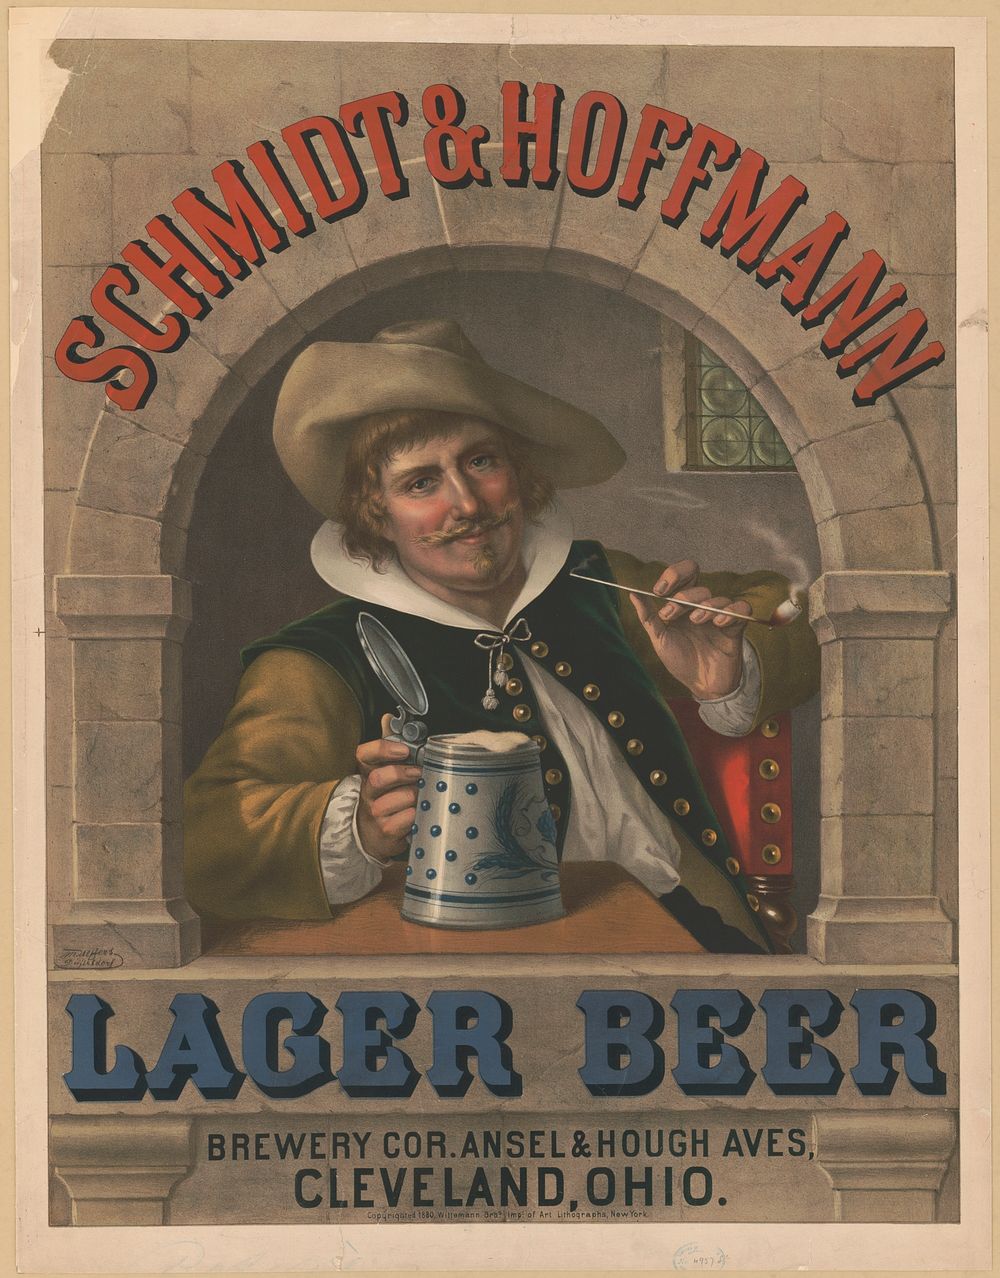 Schmidt & Hoffmann lager beer